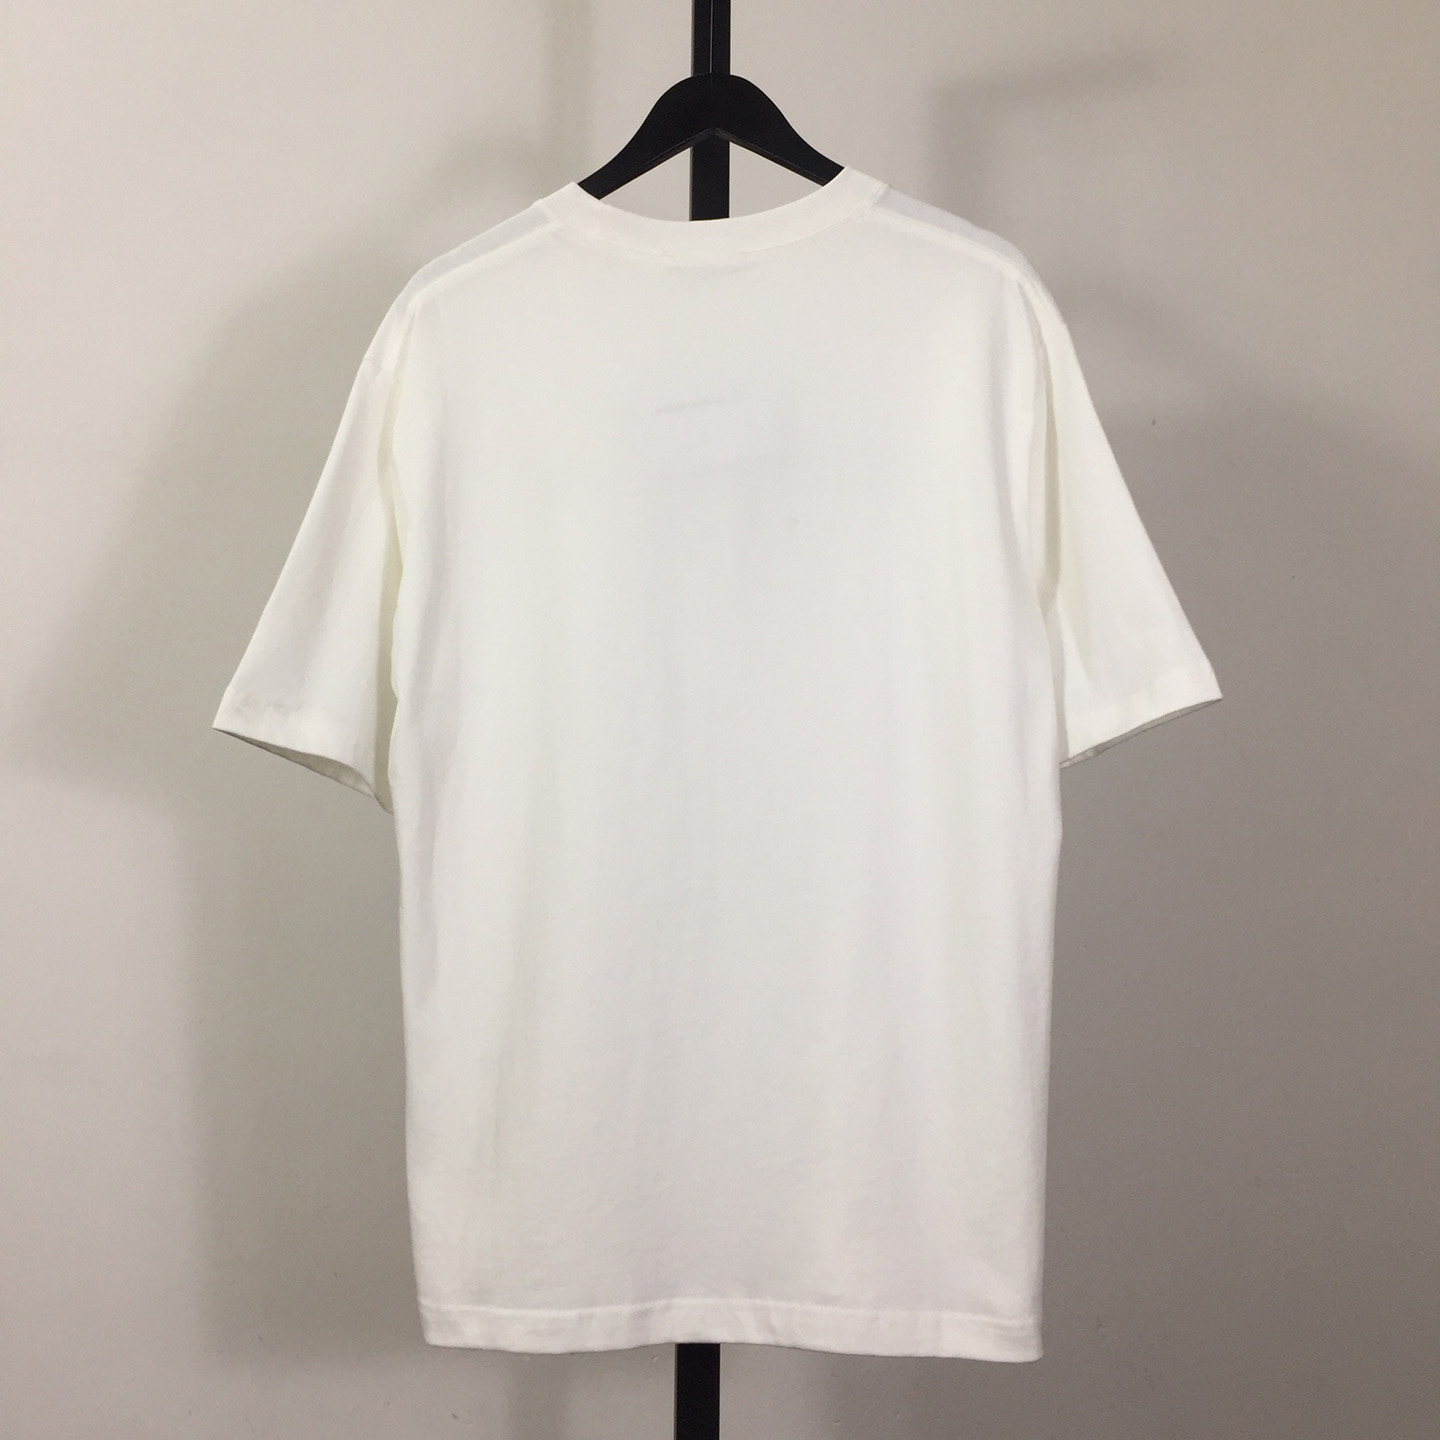 Alexander Wang Cotton T-shirt - DesignerGu